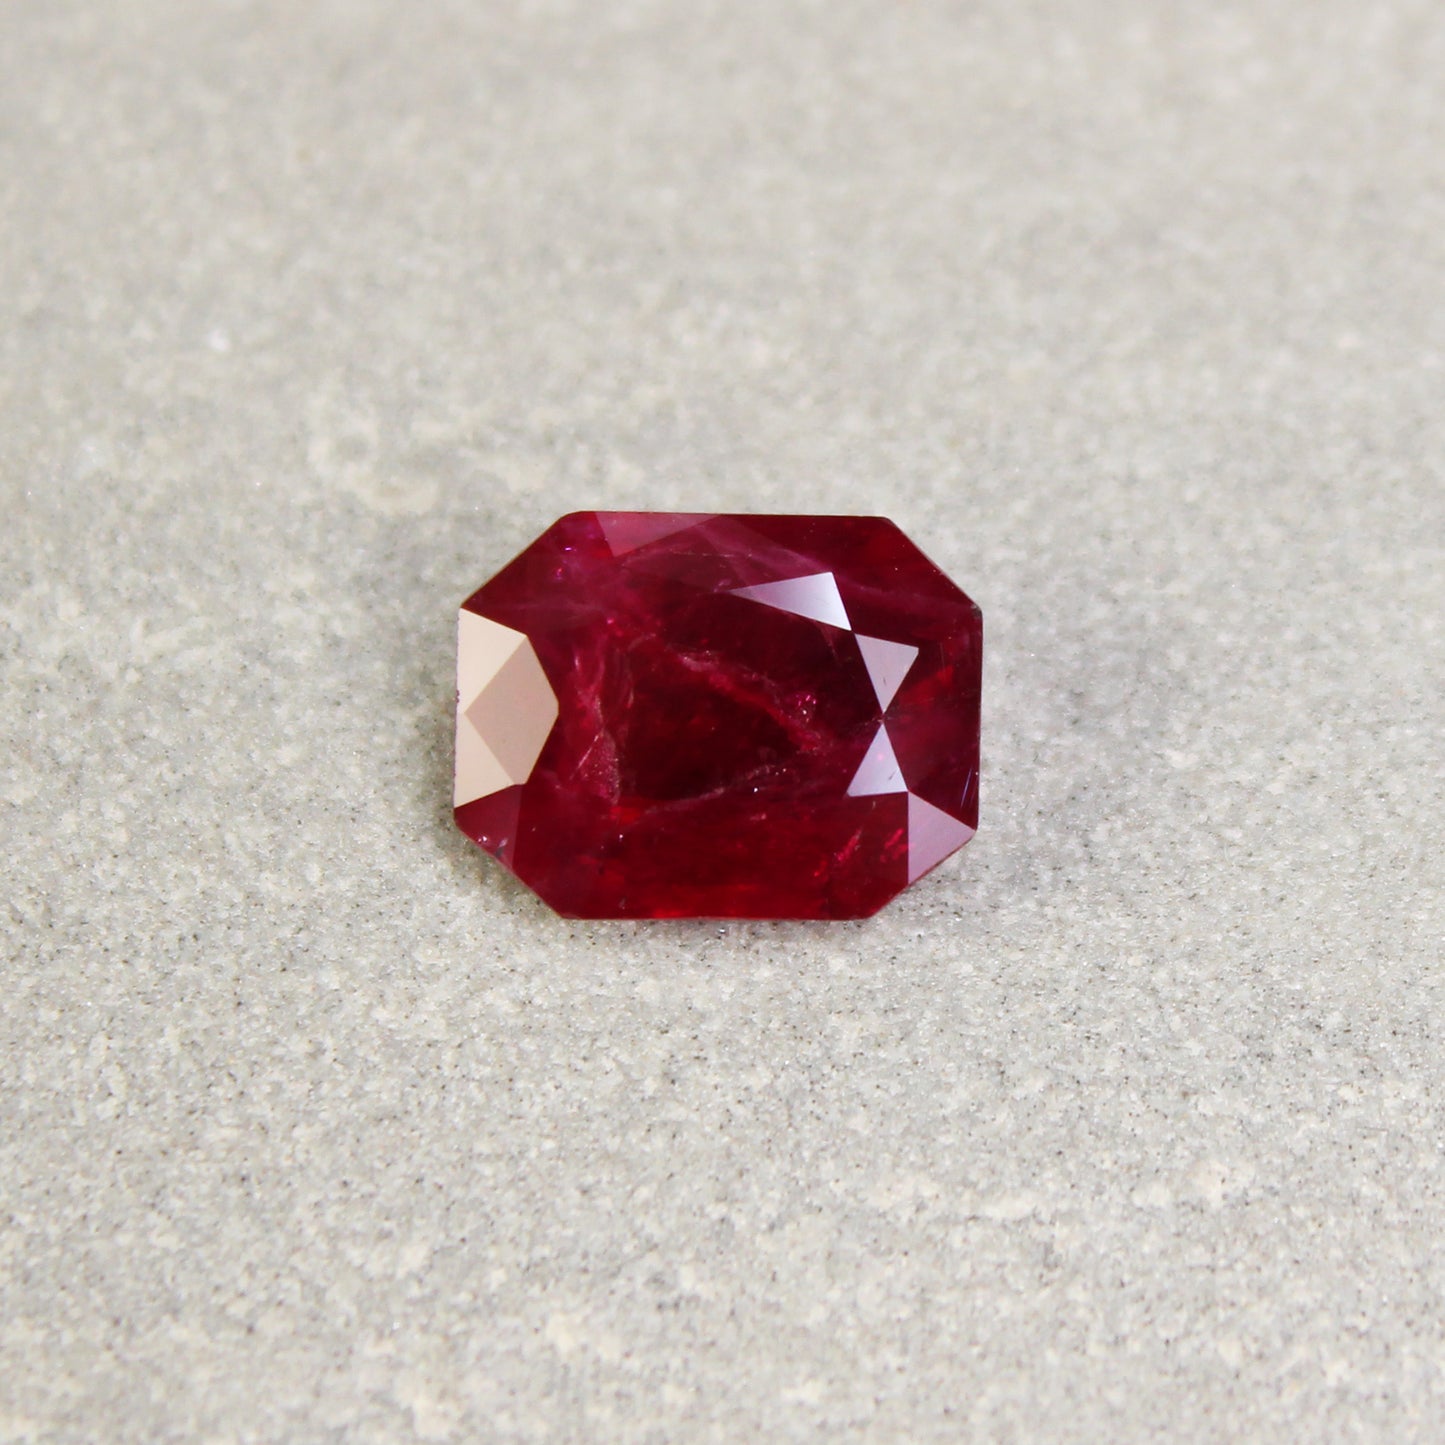 3.77ct Octagon Ruby, H(b), Thailand - 11.13 x 8.70 x 3.82mm